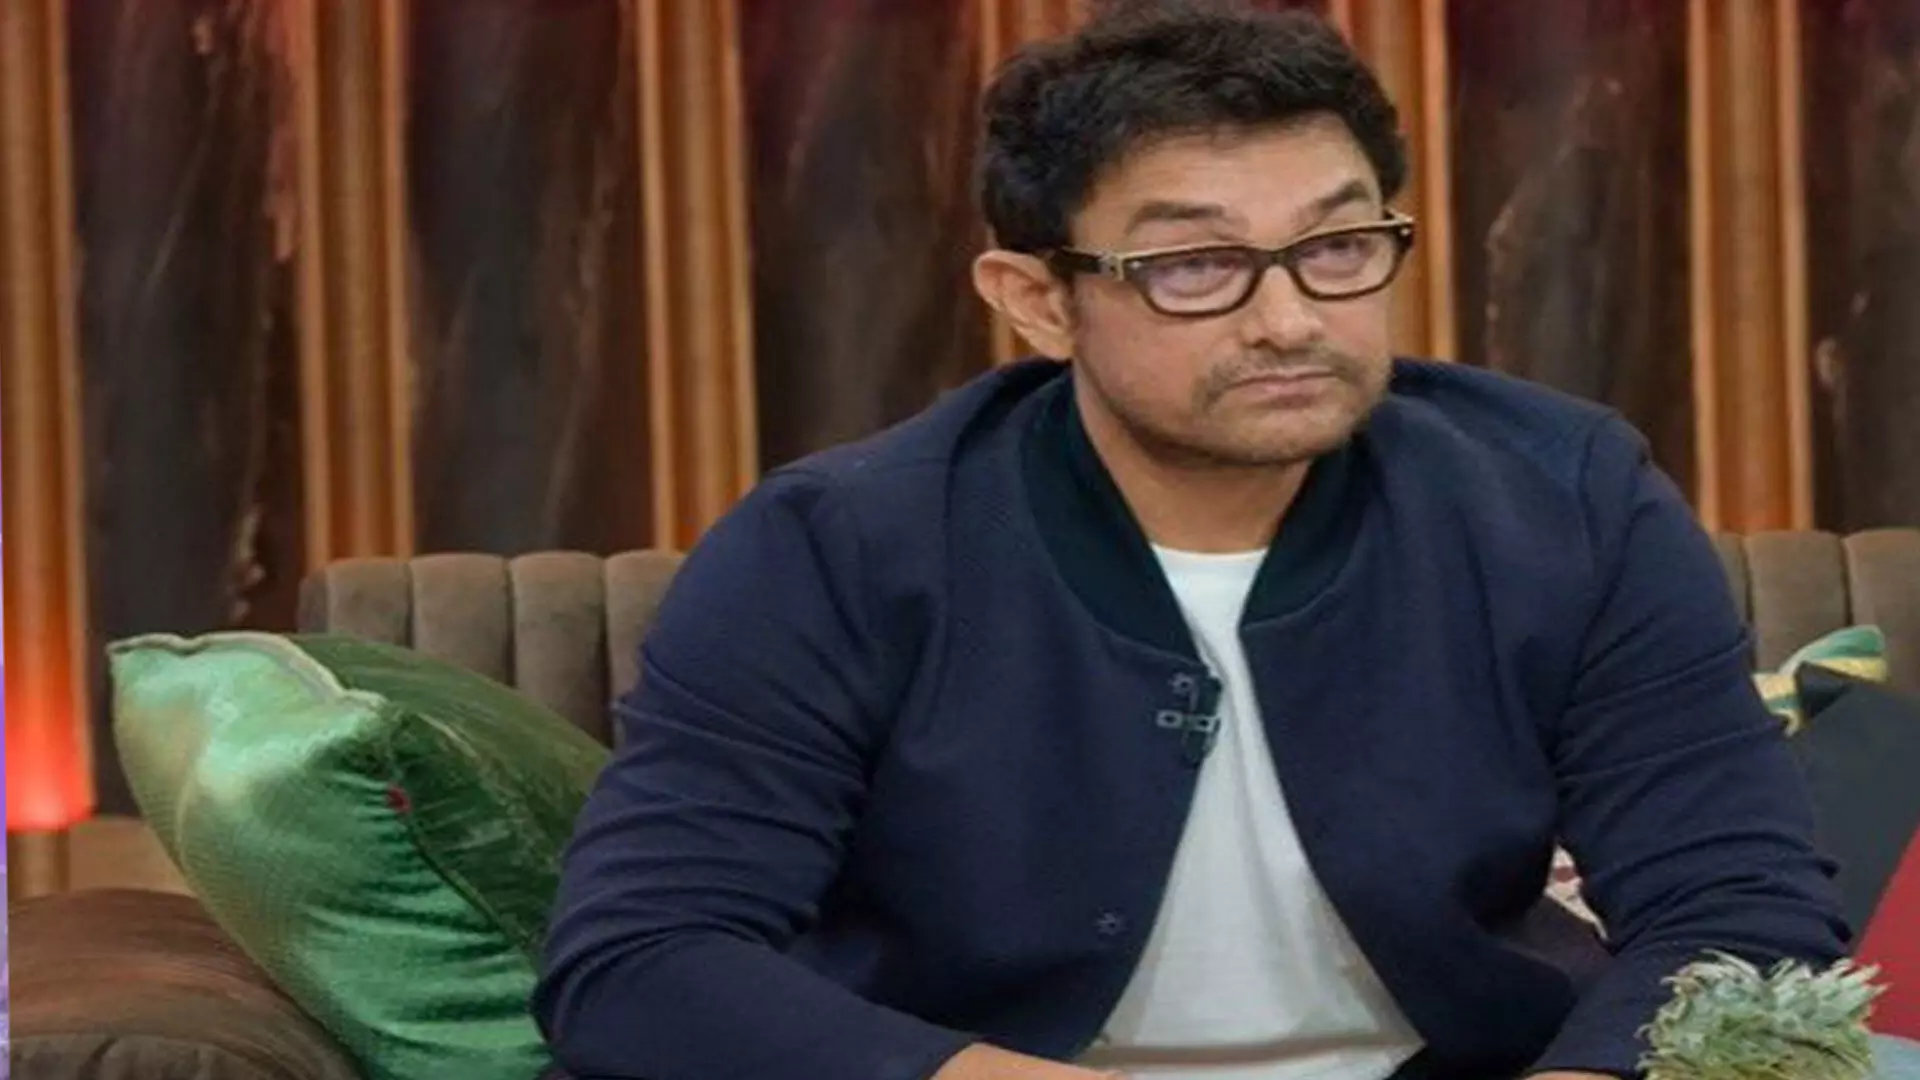 आमिर खान ने पुरस्कार समारोहों में शामिल न होने पर खुलकर बात की